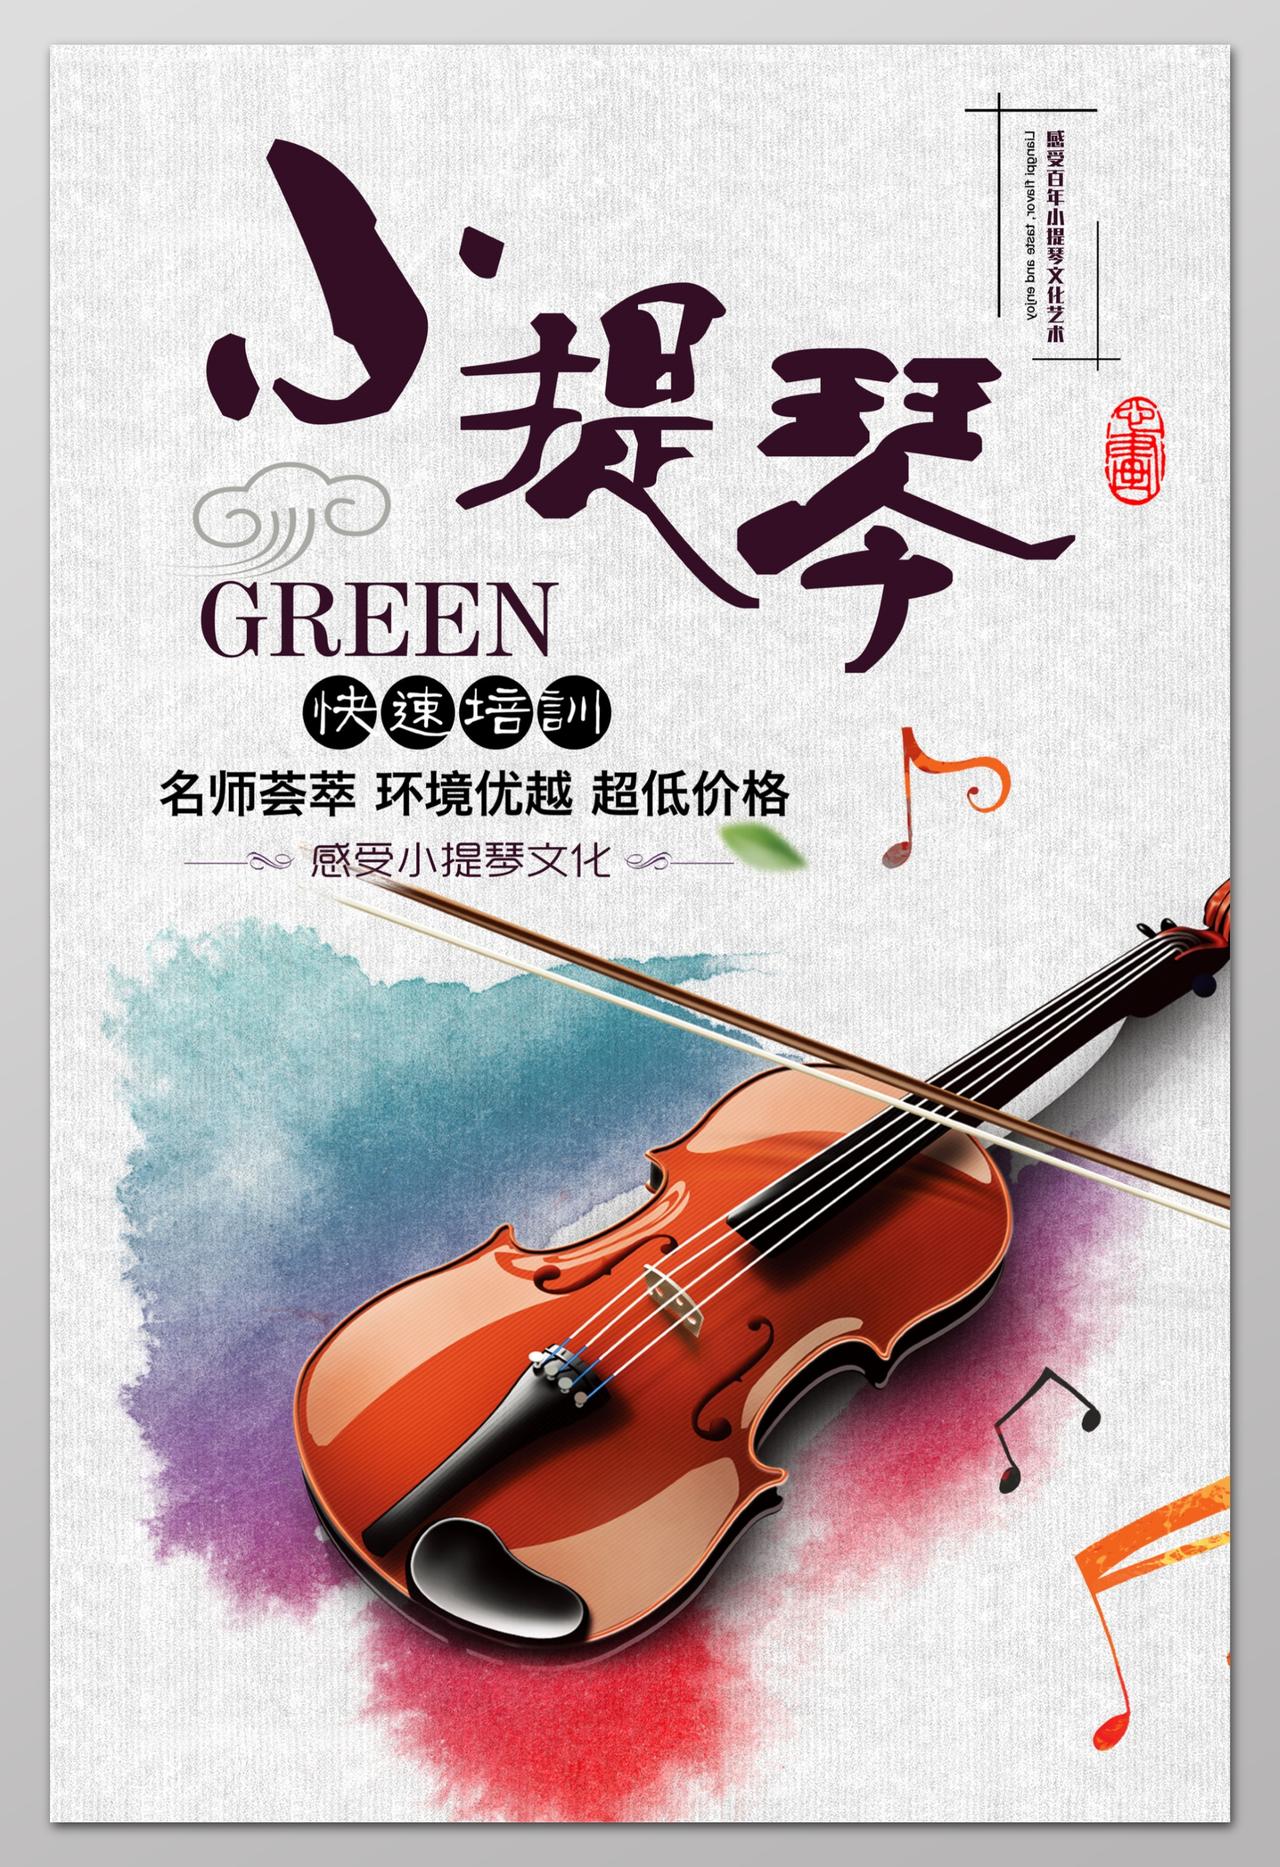 音乐艺术声乐小提琴快速培训班招生海报设计